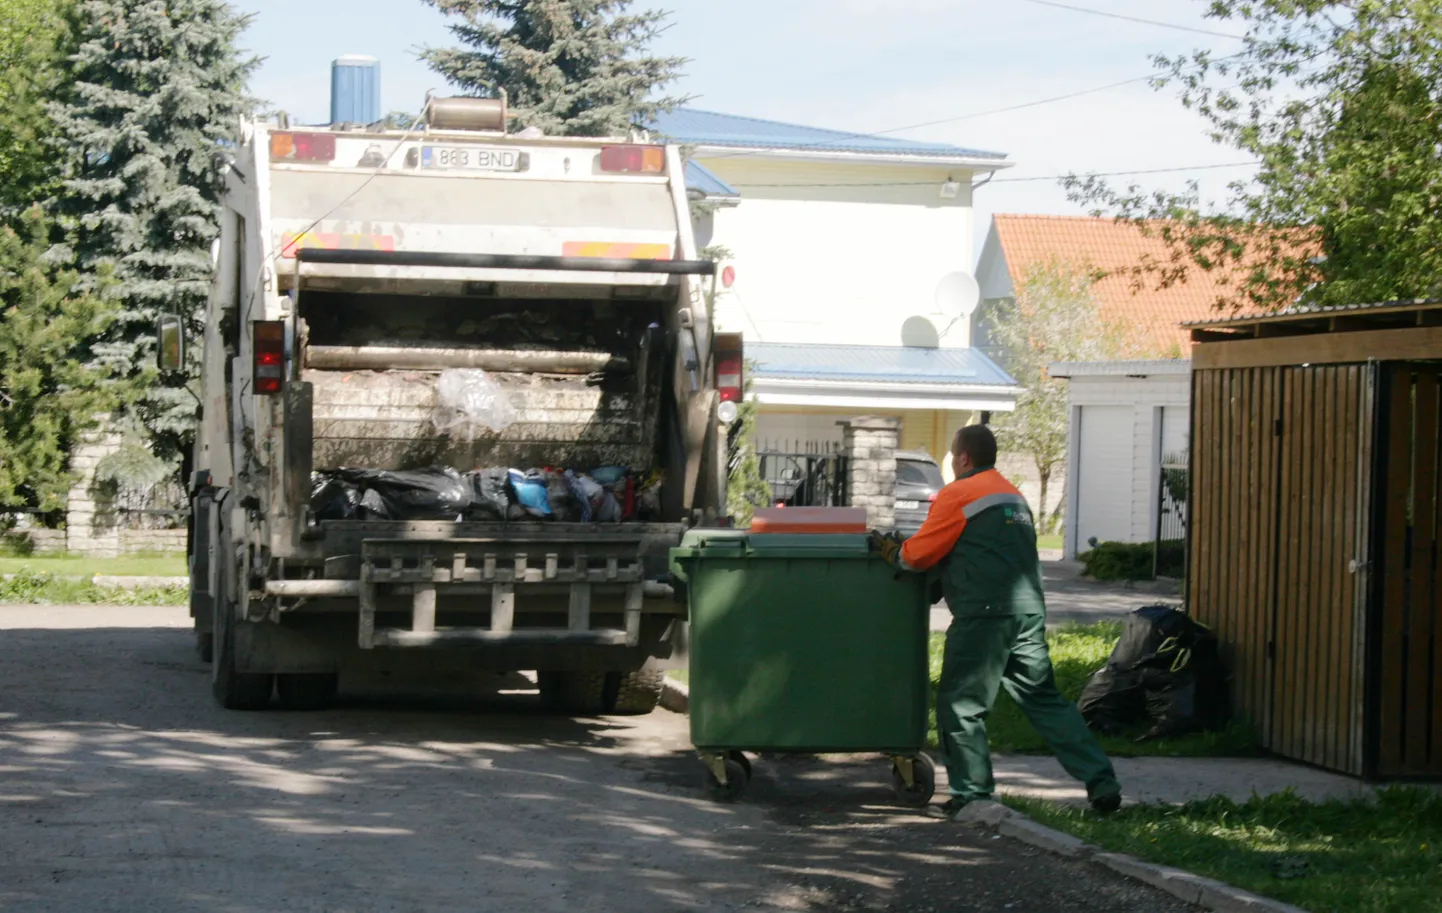 Дополнительную услугу необходимо оплатить, если мусоровоз не может подъехать достаточно близко к контейнеру.